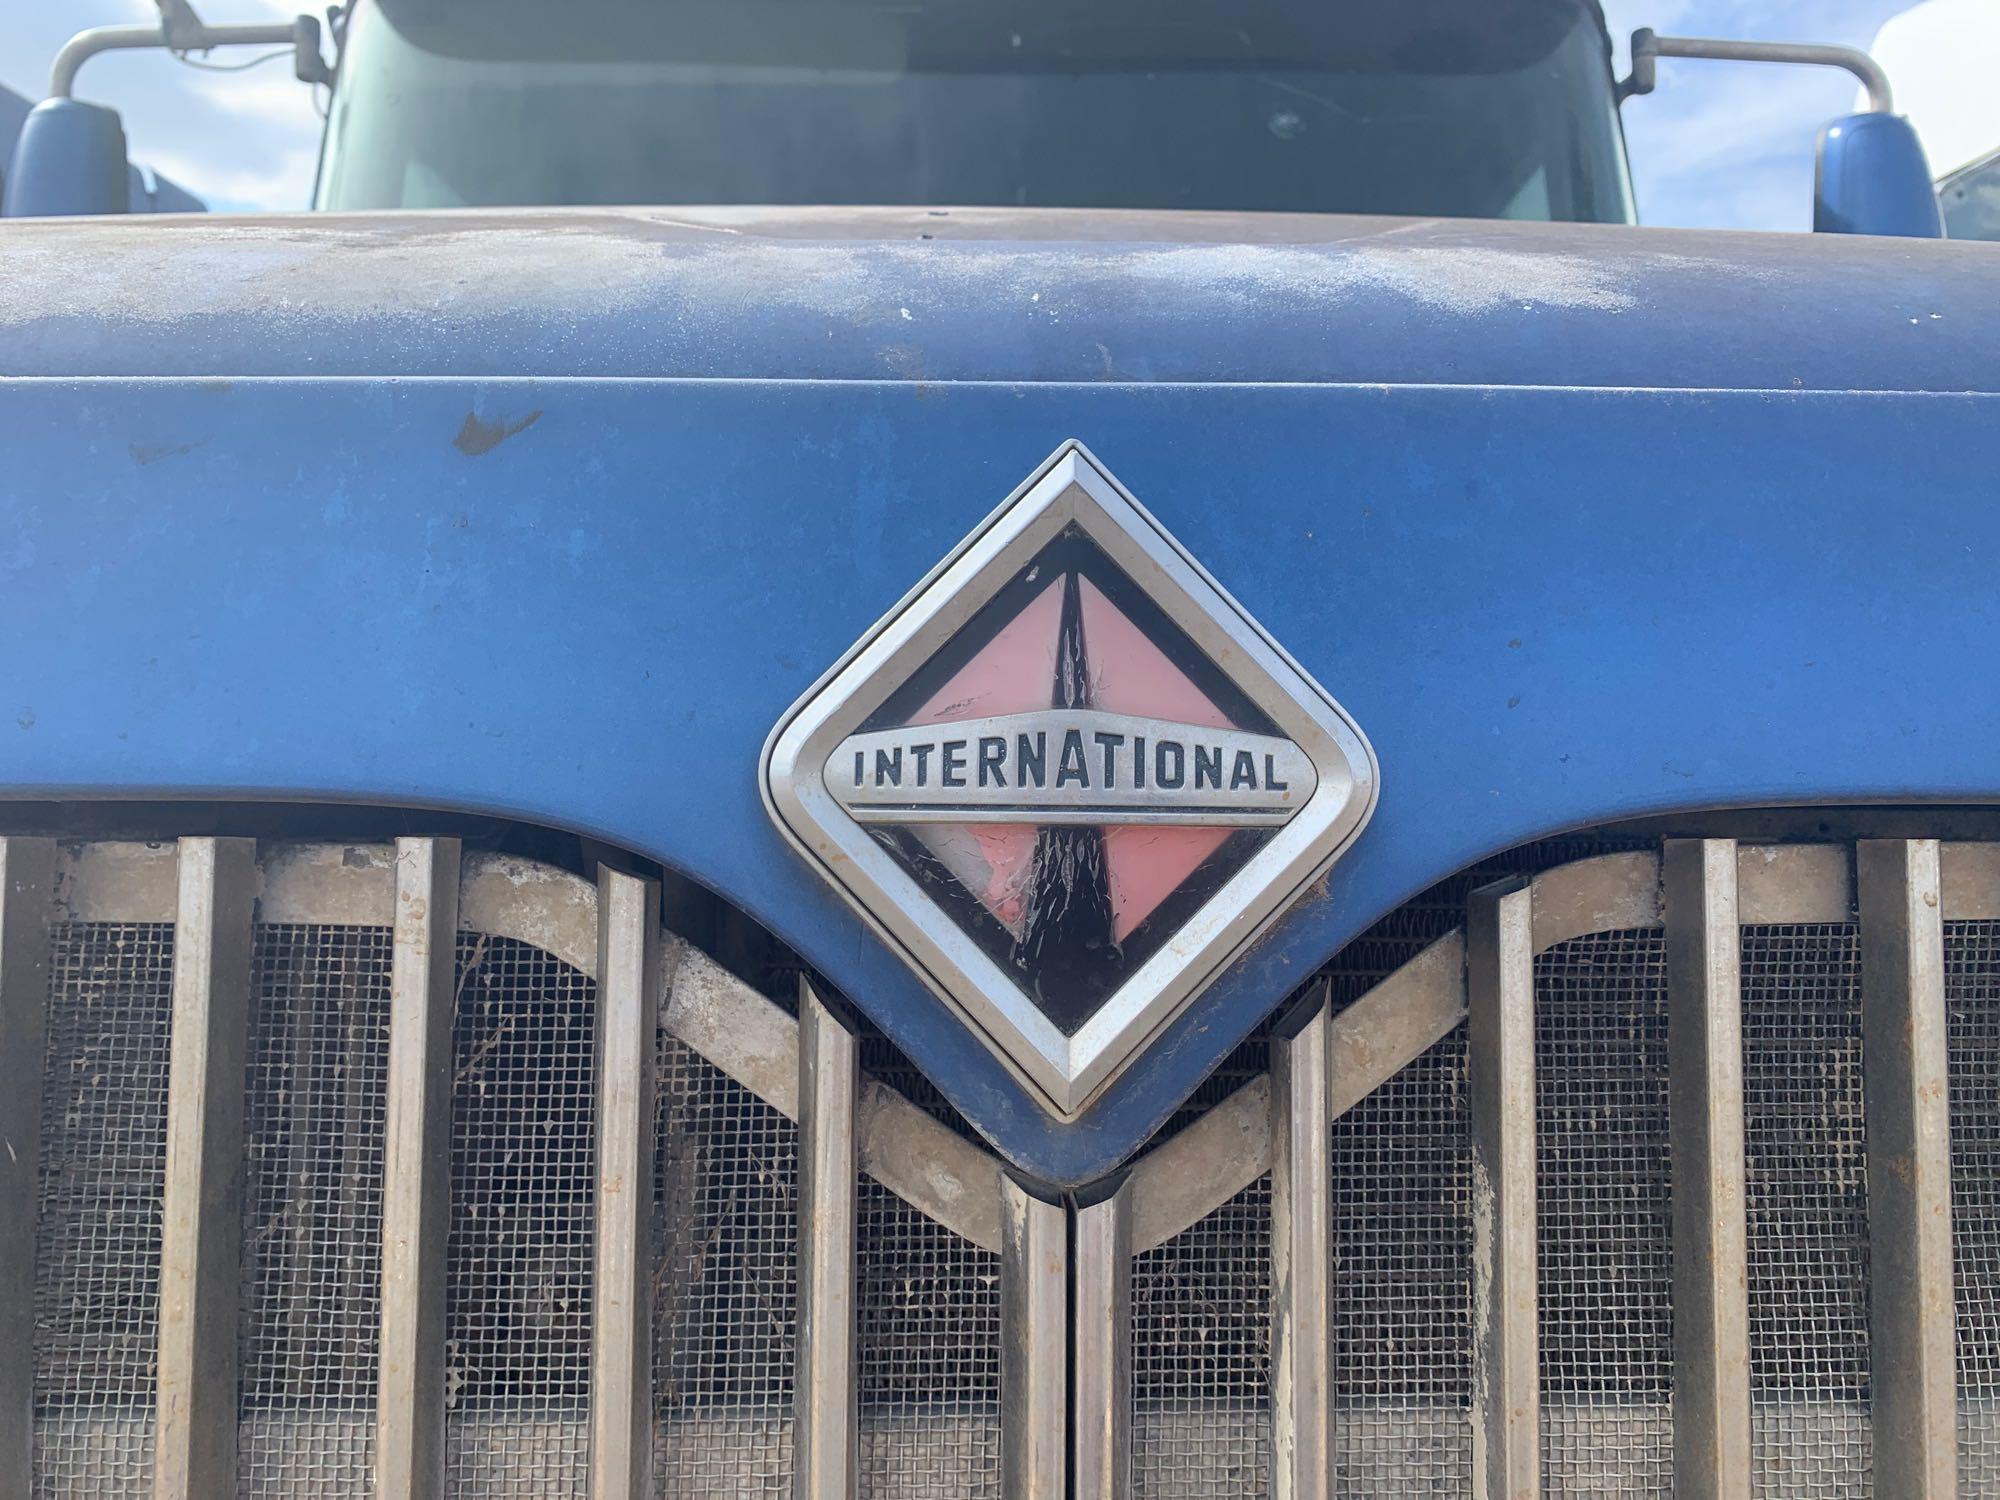 2005 International 9400i Truck, VIN # 2HSCNAPR55C047458